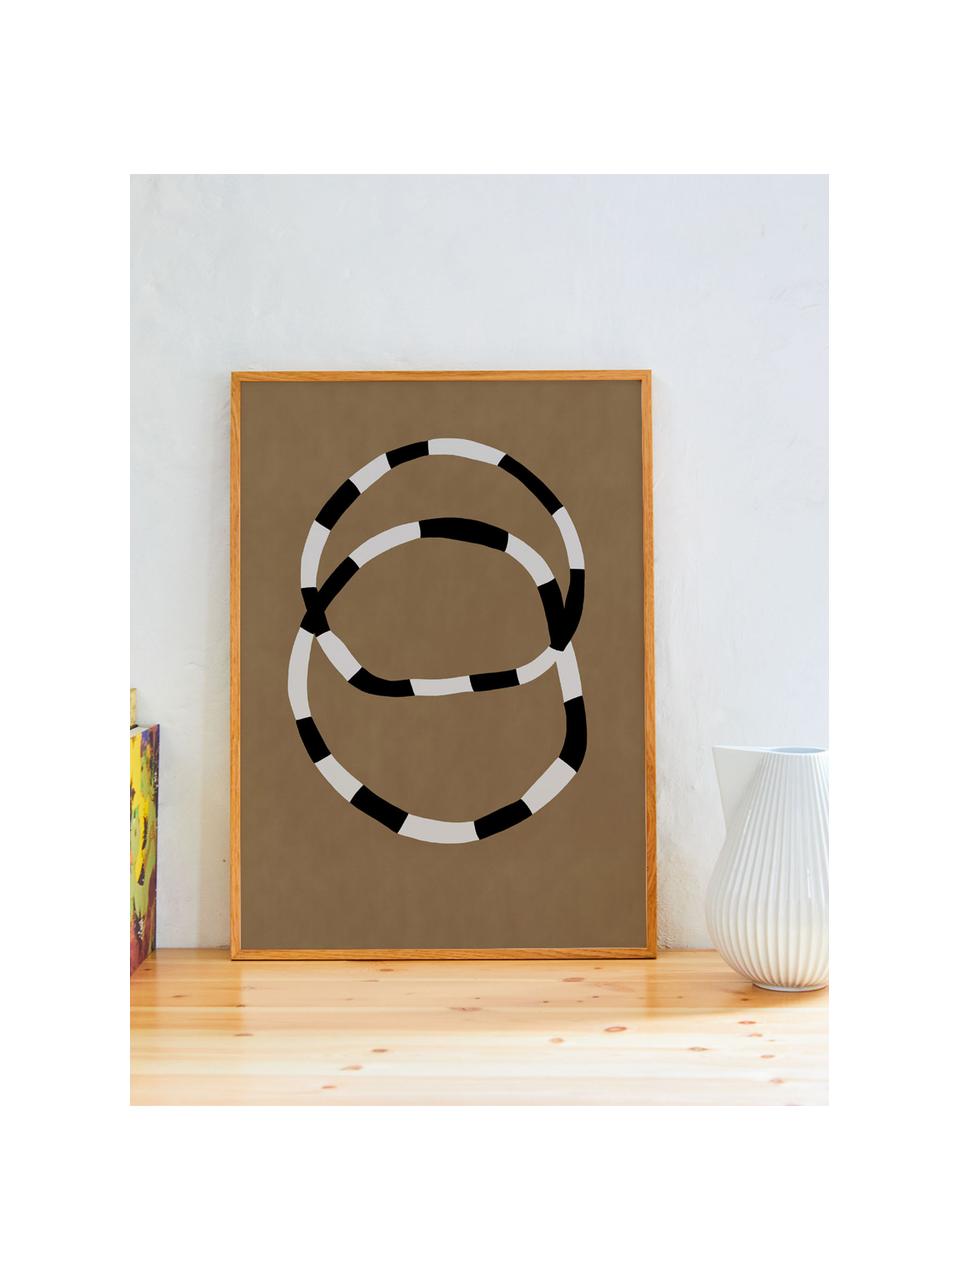 Plakát Bracelets, 210g matný papír Hahnemühle, digitální tisk s 10 barvami odolnými vůči UV záření, Terakotová, tlumeně bílá, černá, Š 30 cm, V 40 cm